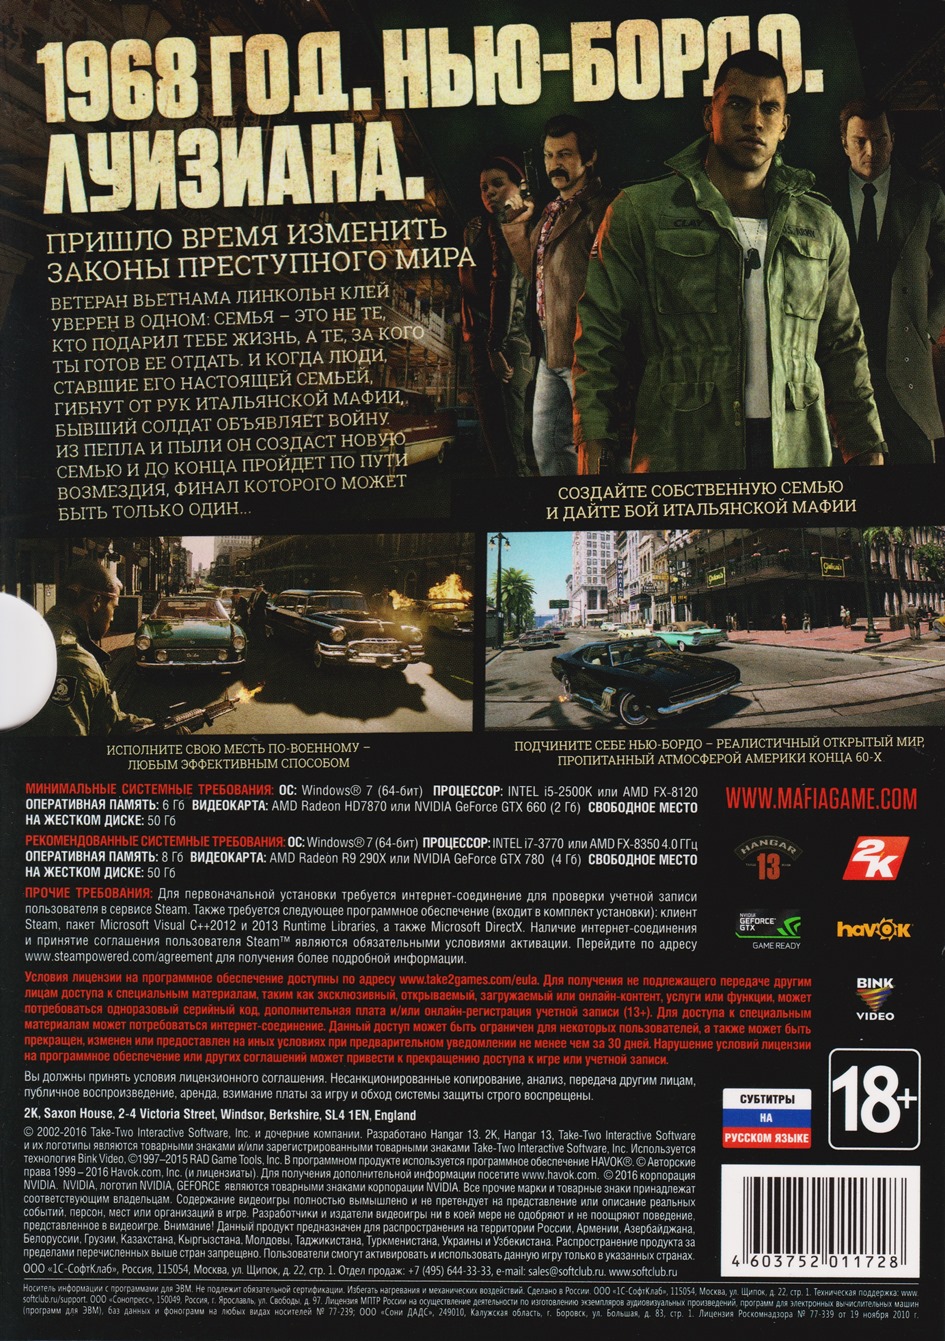 Mafia 3 III (Photo CD-Key) STEAM